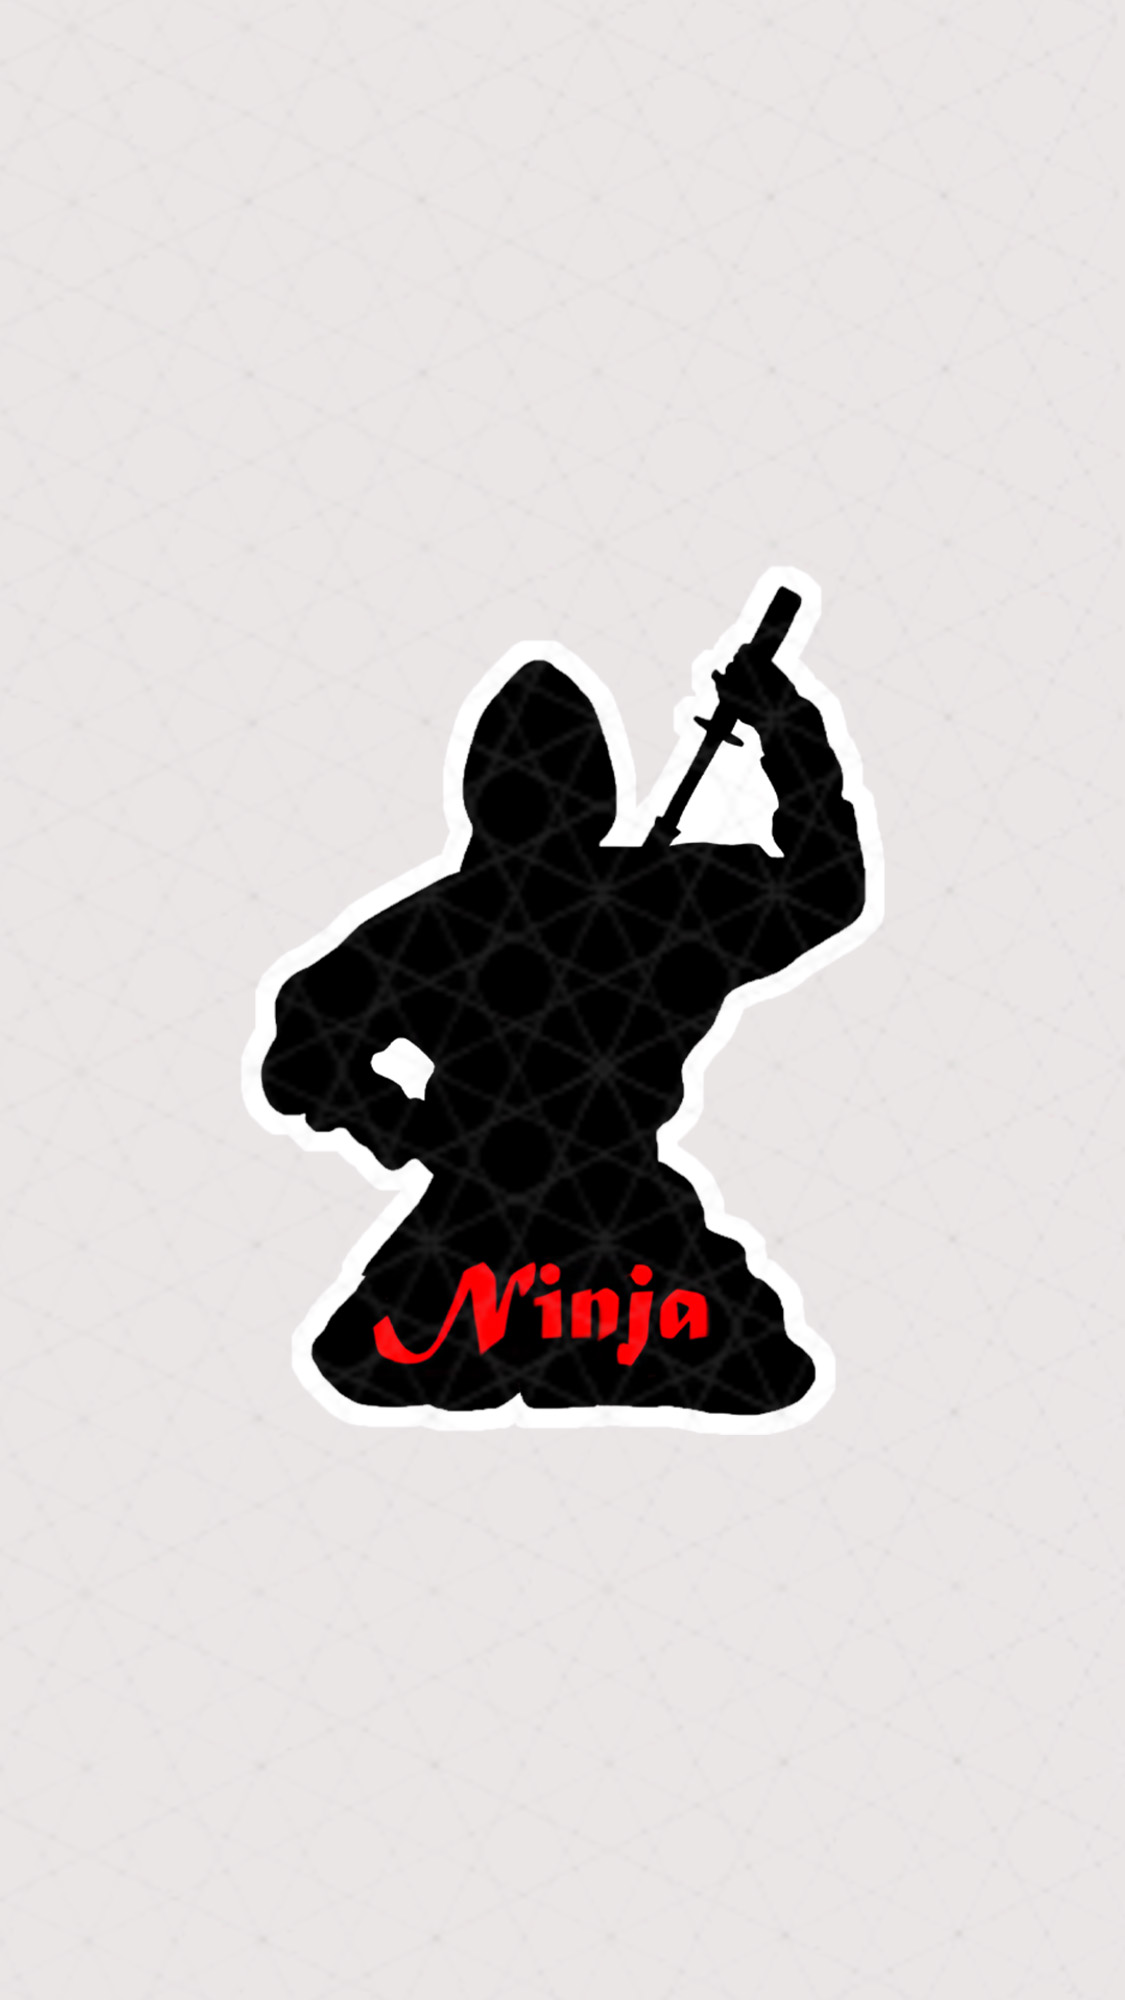 استیکر Ninja با رنگ سیاه